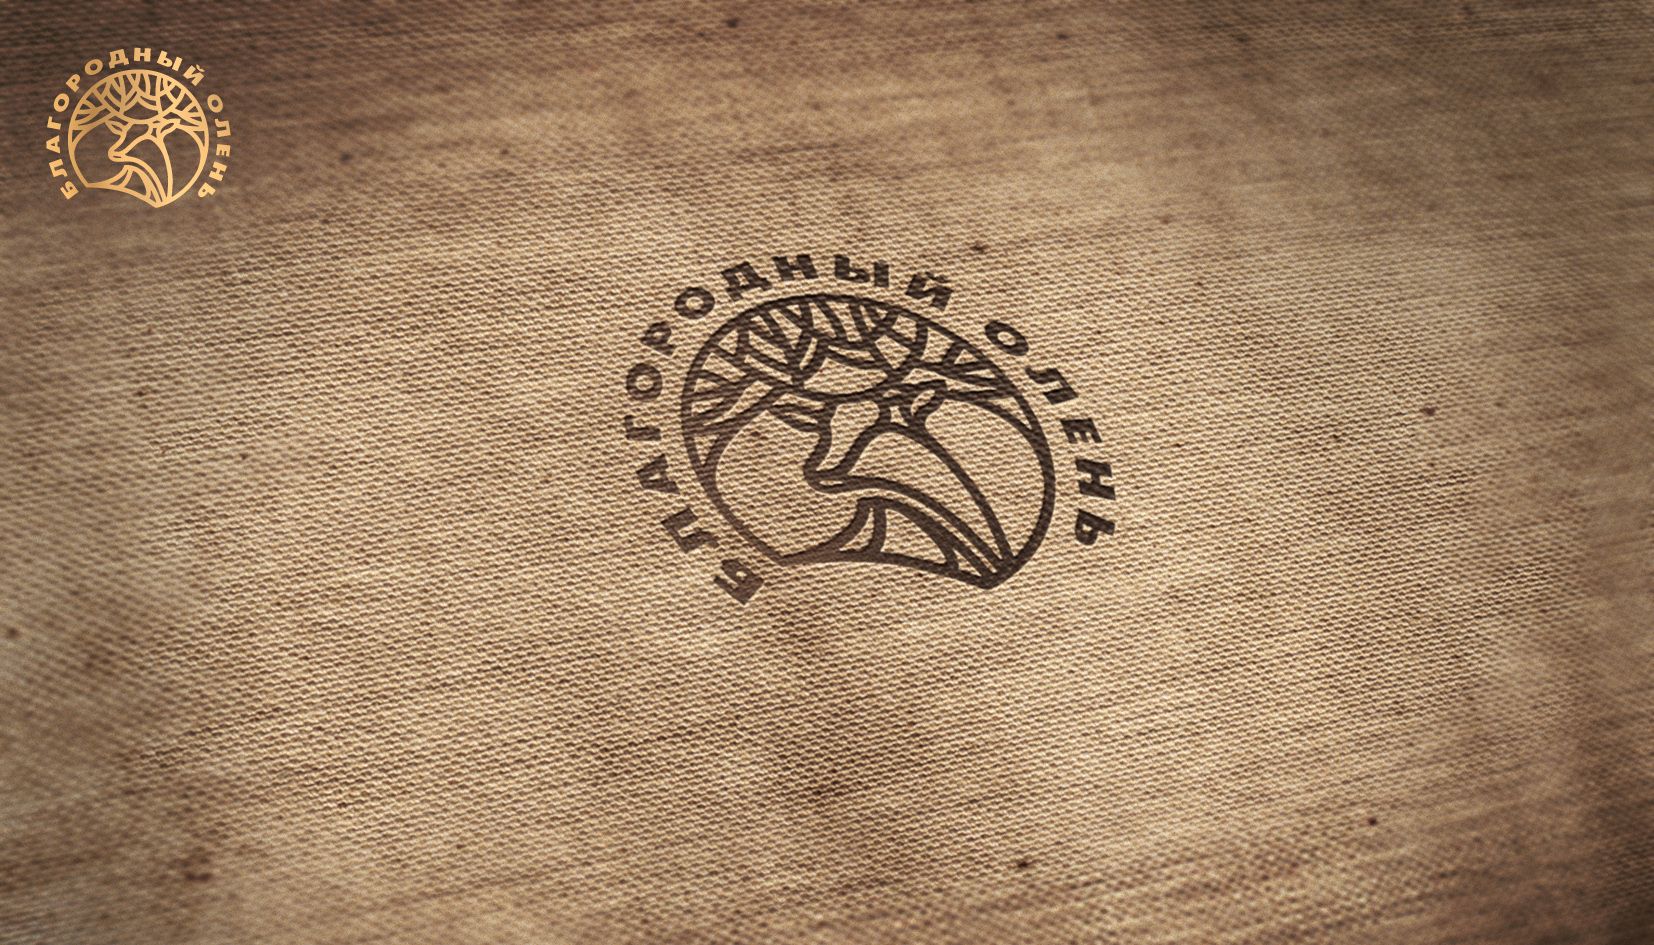 Логотип для Благородный олень - дизайнер andblin61